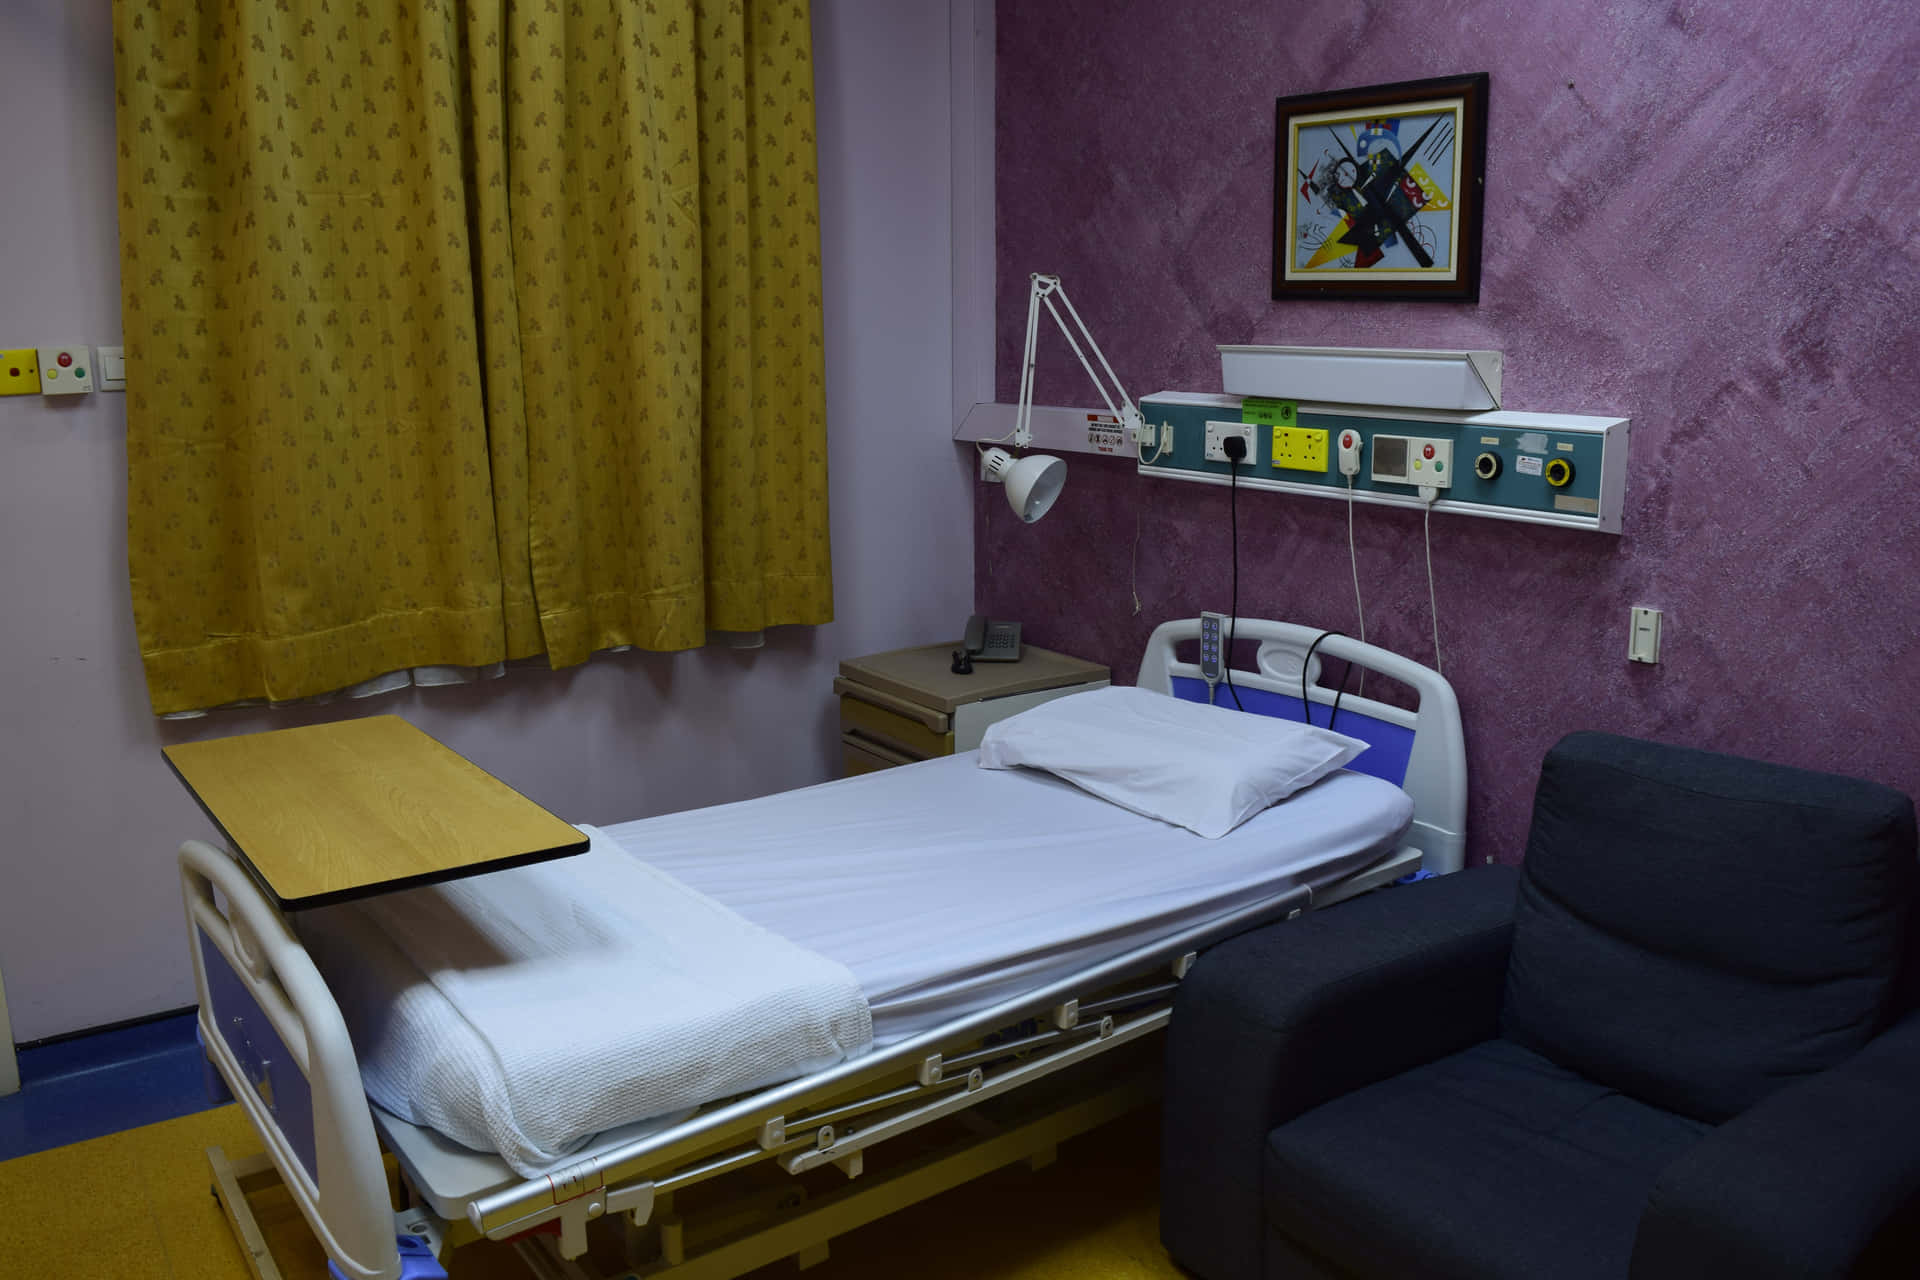 Image  A modern hospital room